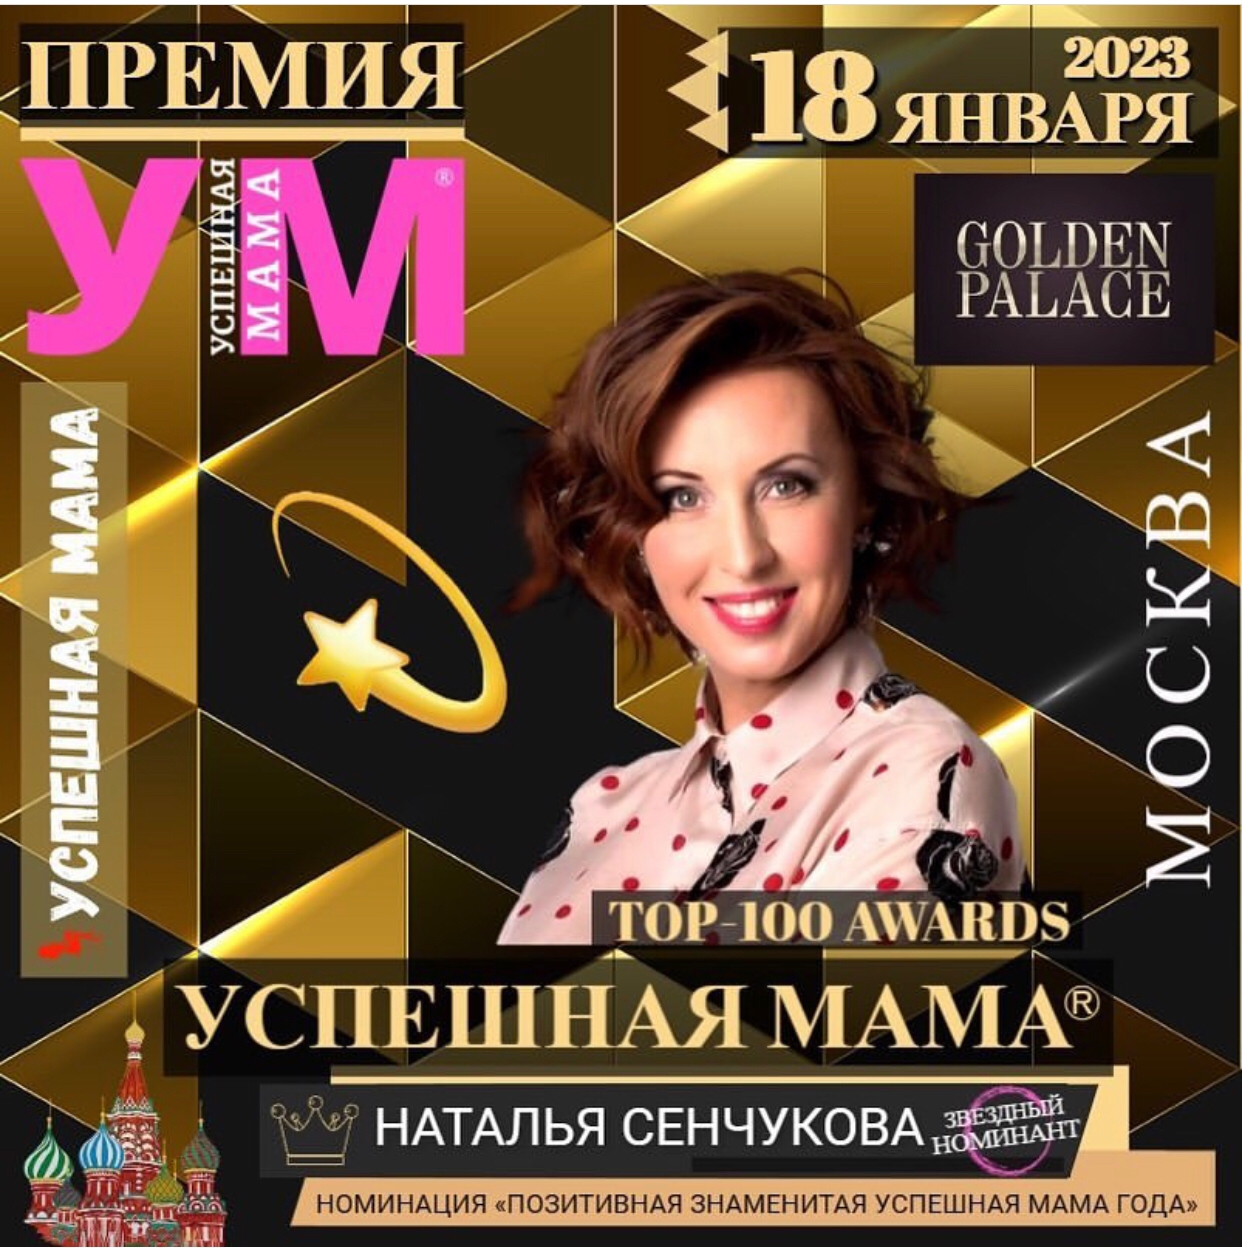 фото: 18 января 2023 в Москве состоится премия «Успешная мама».